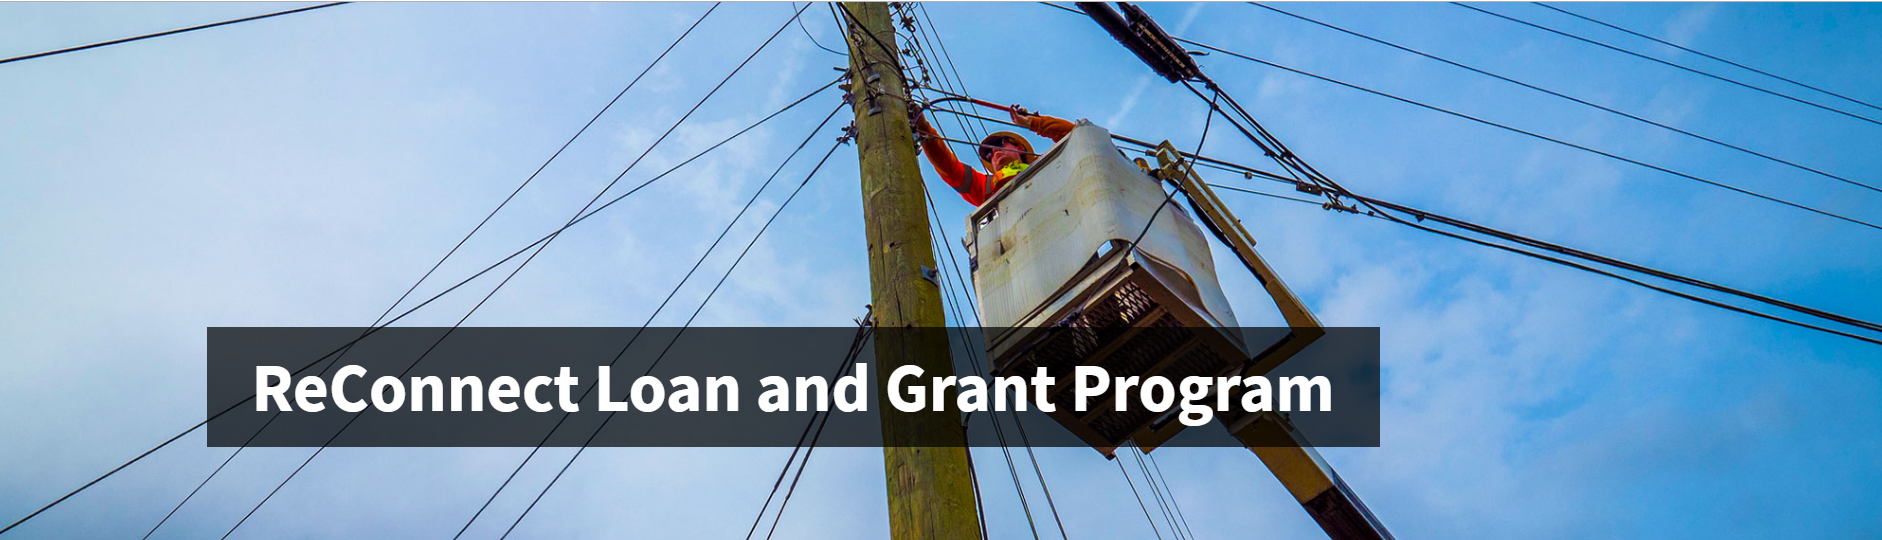 USDA ReConnect Loan & Grant Program Baner